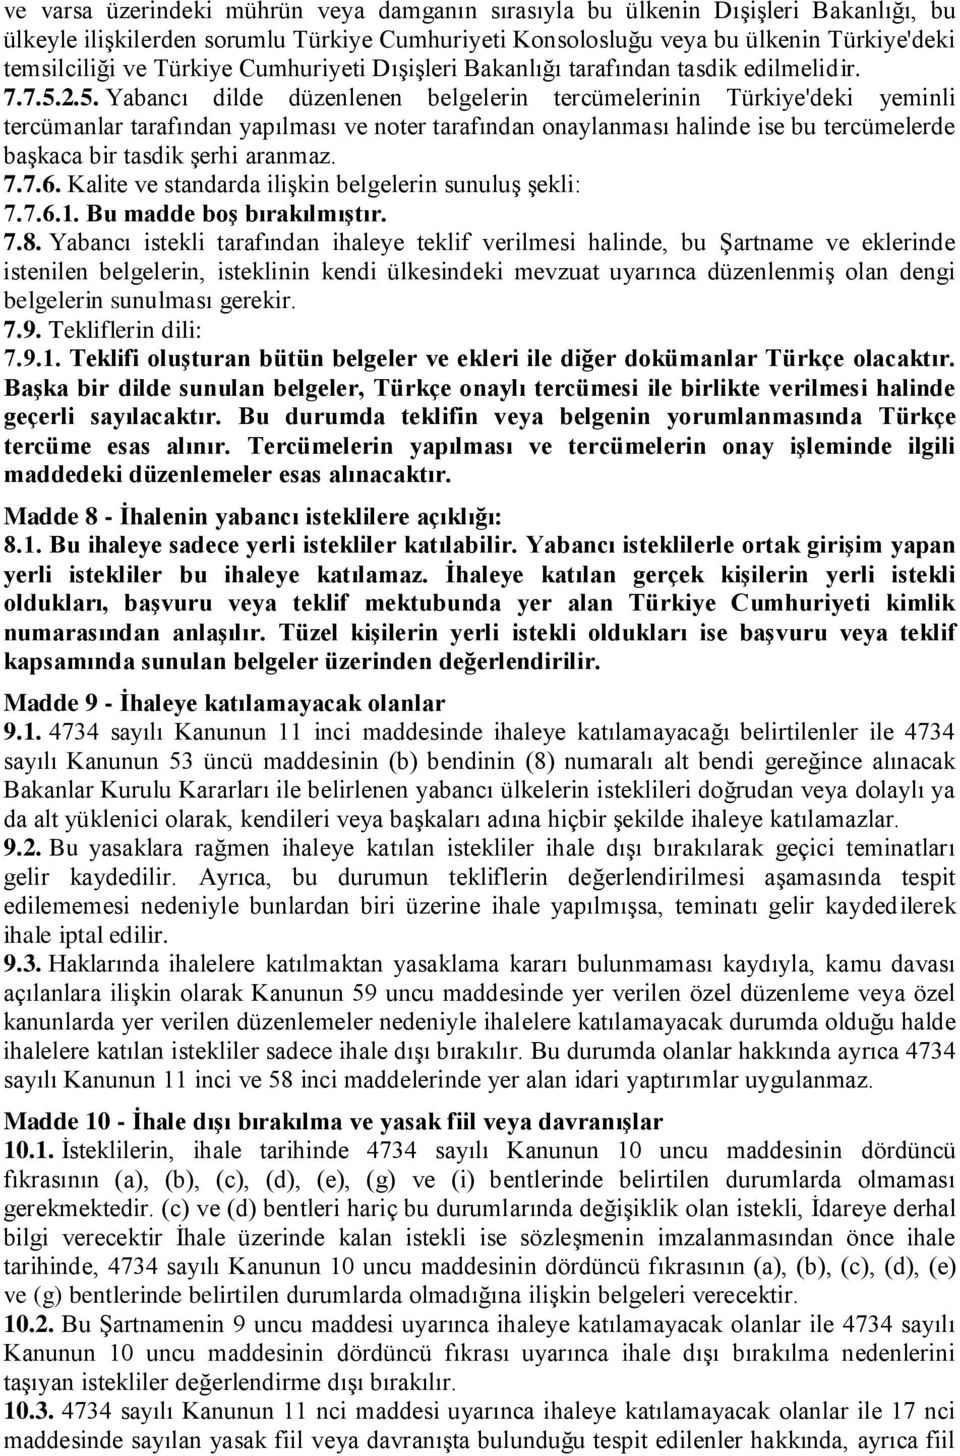 2.5. Yabancı dilde düzenlenen belgelerin tercümelerinin Türkiye'deki yeminli tercümanlar tarafından yapılması ve noter tarafından onaylanması halinde ise bu tercümelerde başkaca bir tasdik şerhi